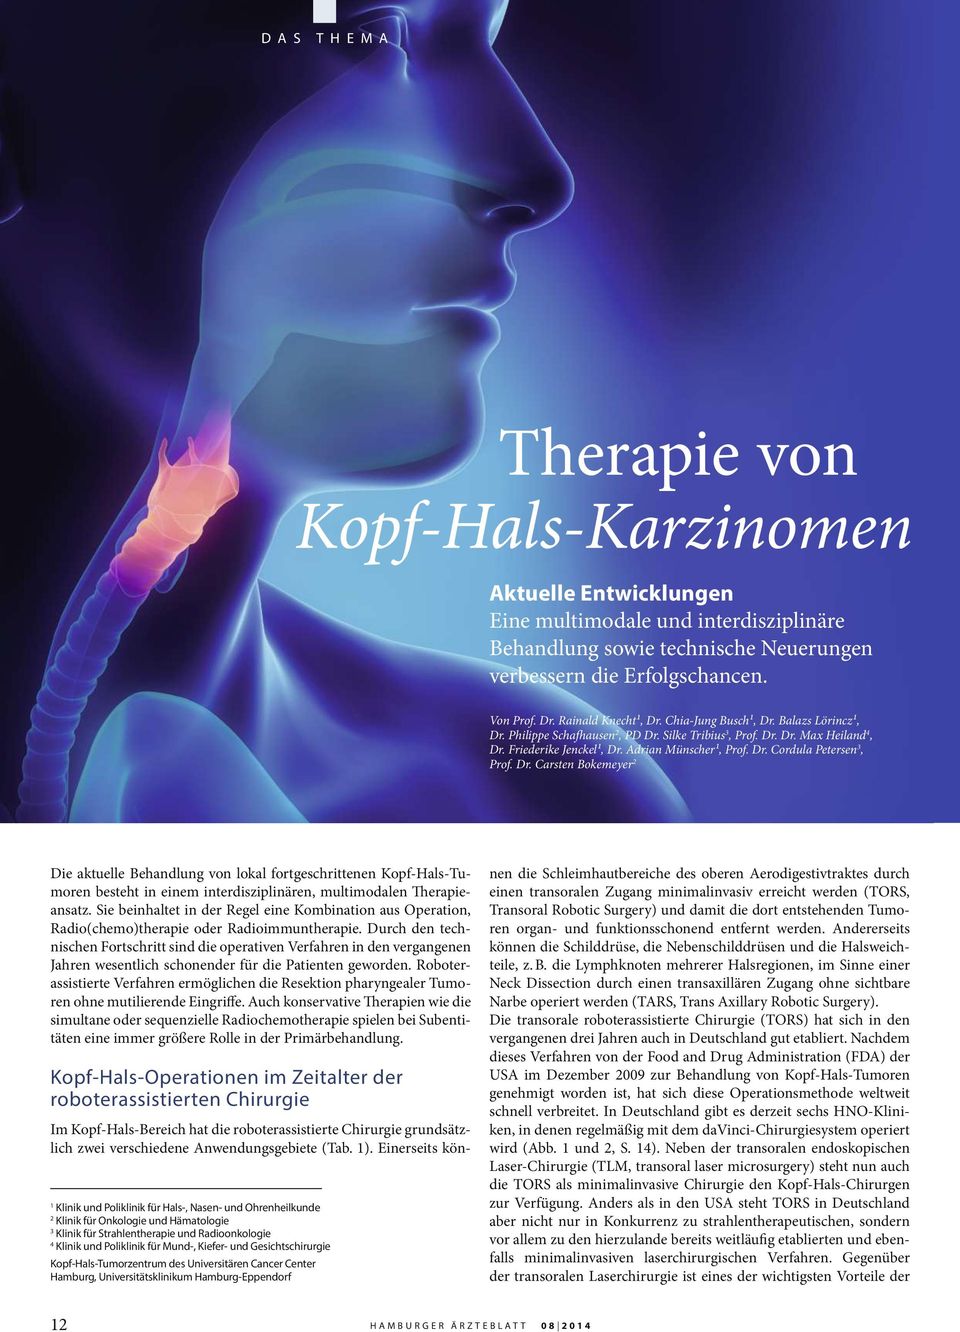 Dr. Carsten Bokemeyer 2 Die aktuelle Behandlung von lokal fortgeschrittenen Kopf-Hals-Tumoren besteht in einem interdisziplinären, multimodalen Therapieansatz.